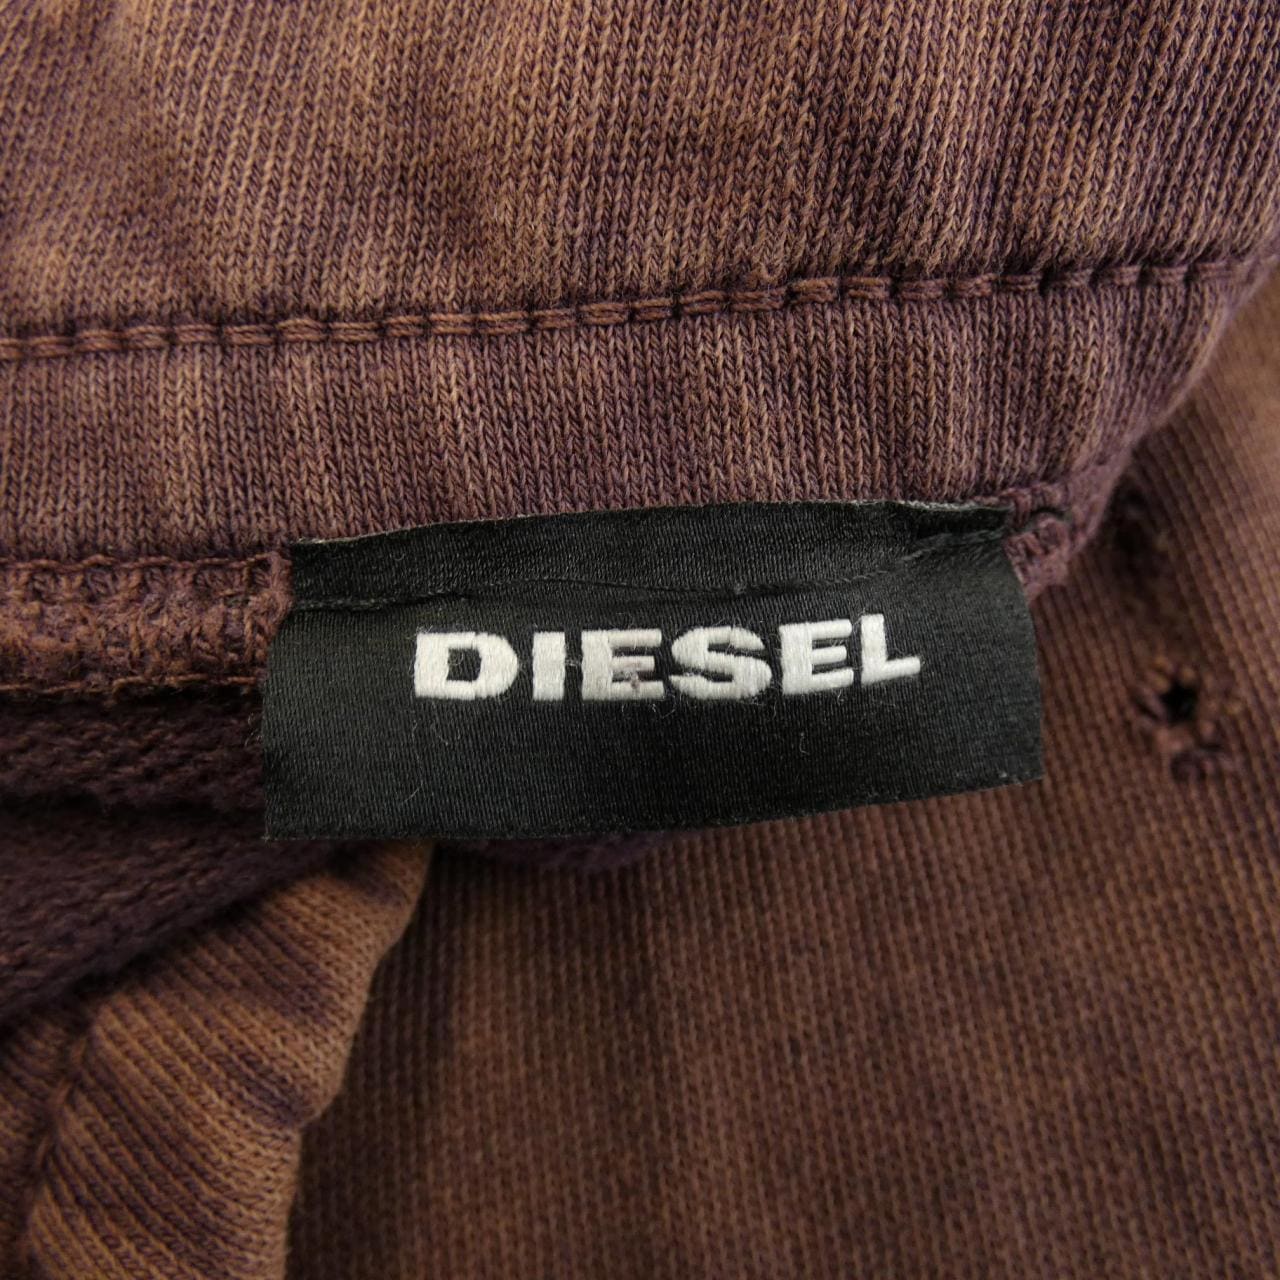 Diesel DIESEL pants